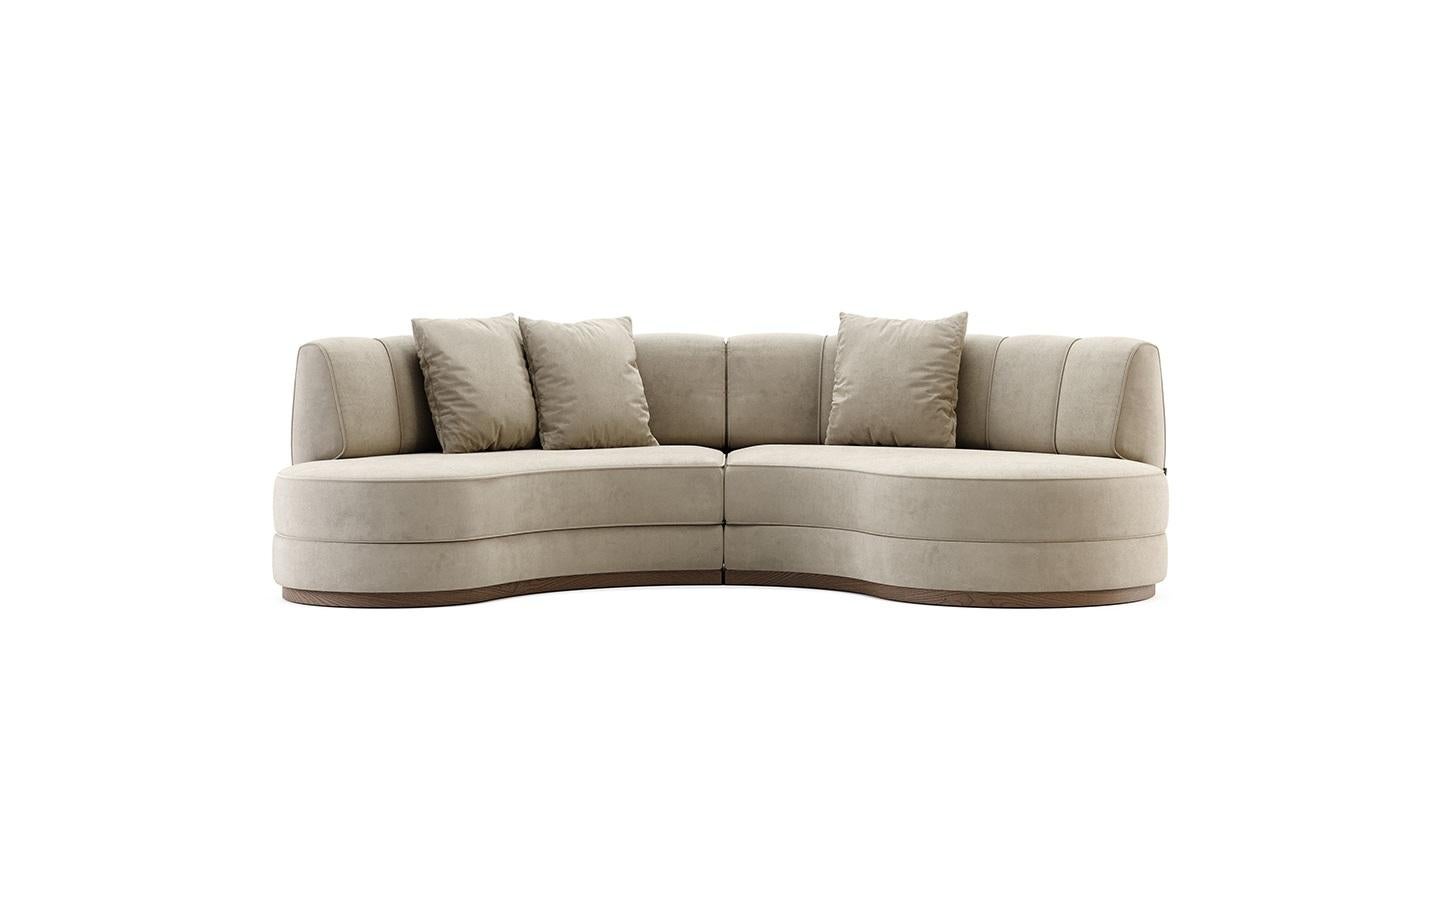 Mid-Century Modern inspiriertes Sektionssofa mit geschwungenem Design und luxuriösem hellgrauem Samtstoff. Gestützt von einem Sockel aus nussbaumfarbenem Holz.
Der für dieses Sofa vorgeschlagene Samt ist schmutz- und wasserabweisend. Dieses Sofa